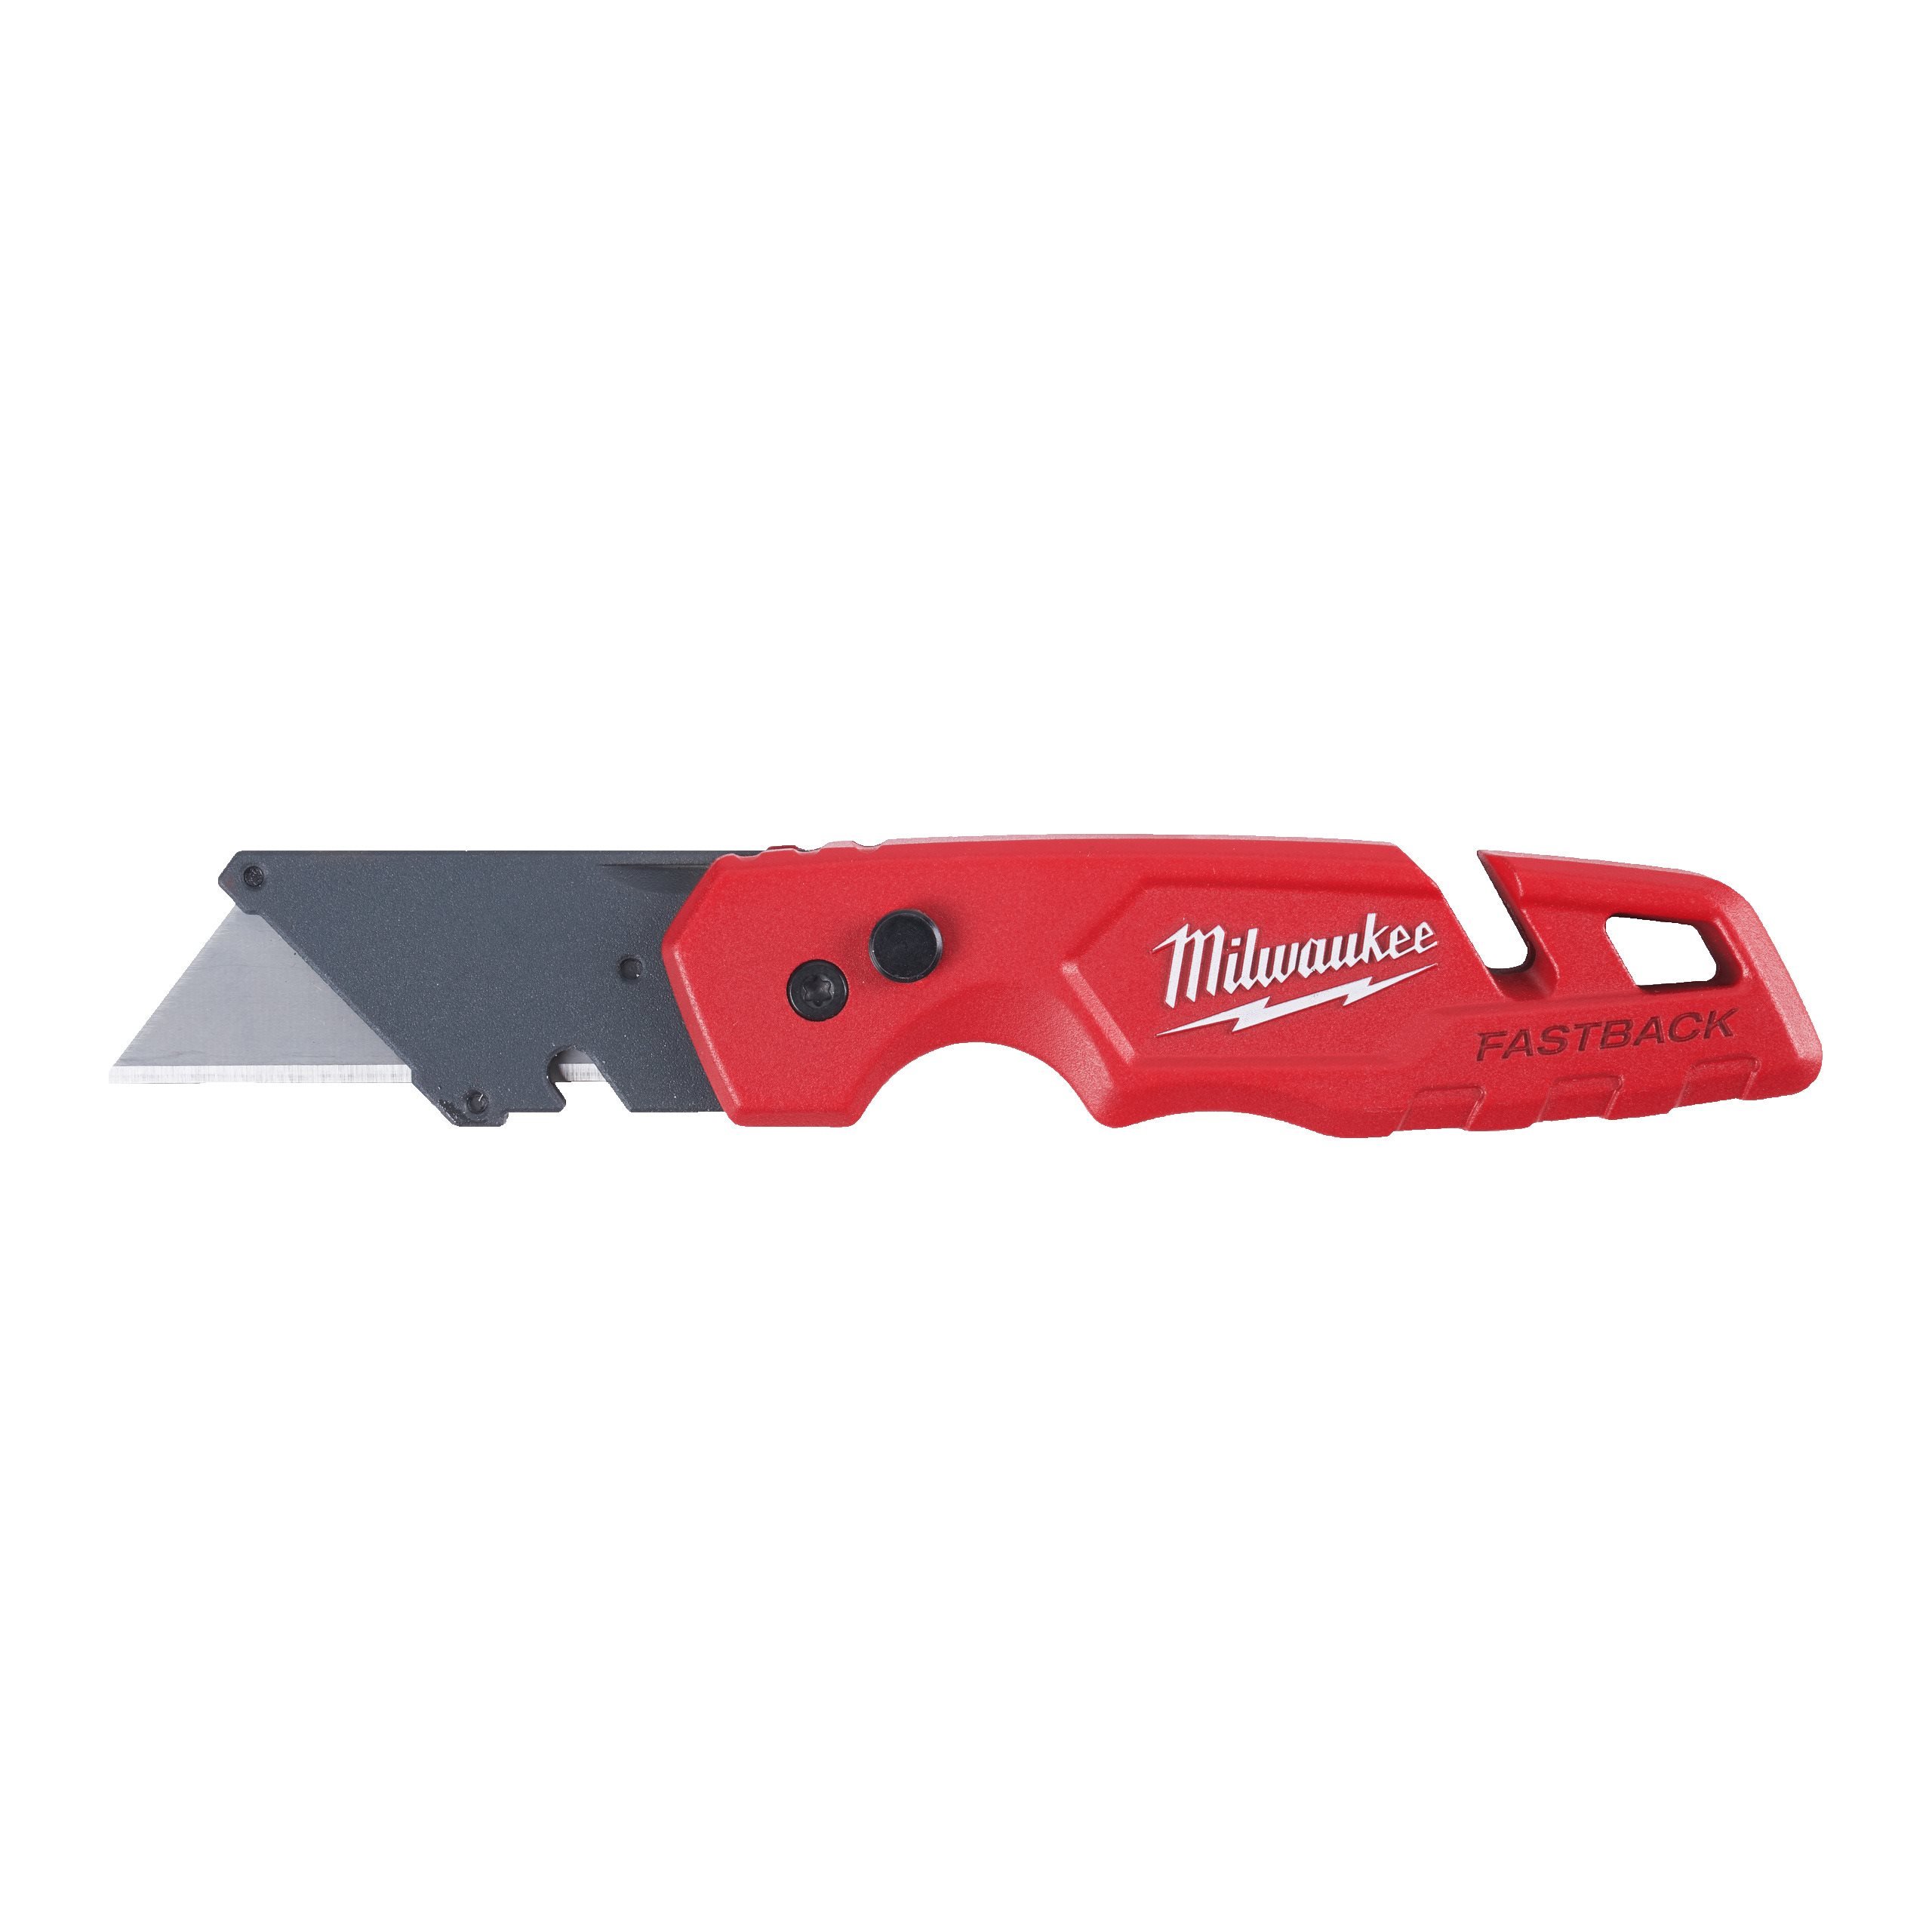 Fastback™ Foldekniv med knivblad-opbevaring | Tool DK